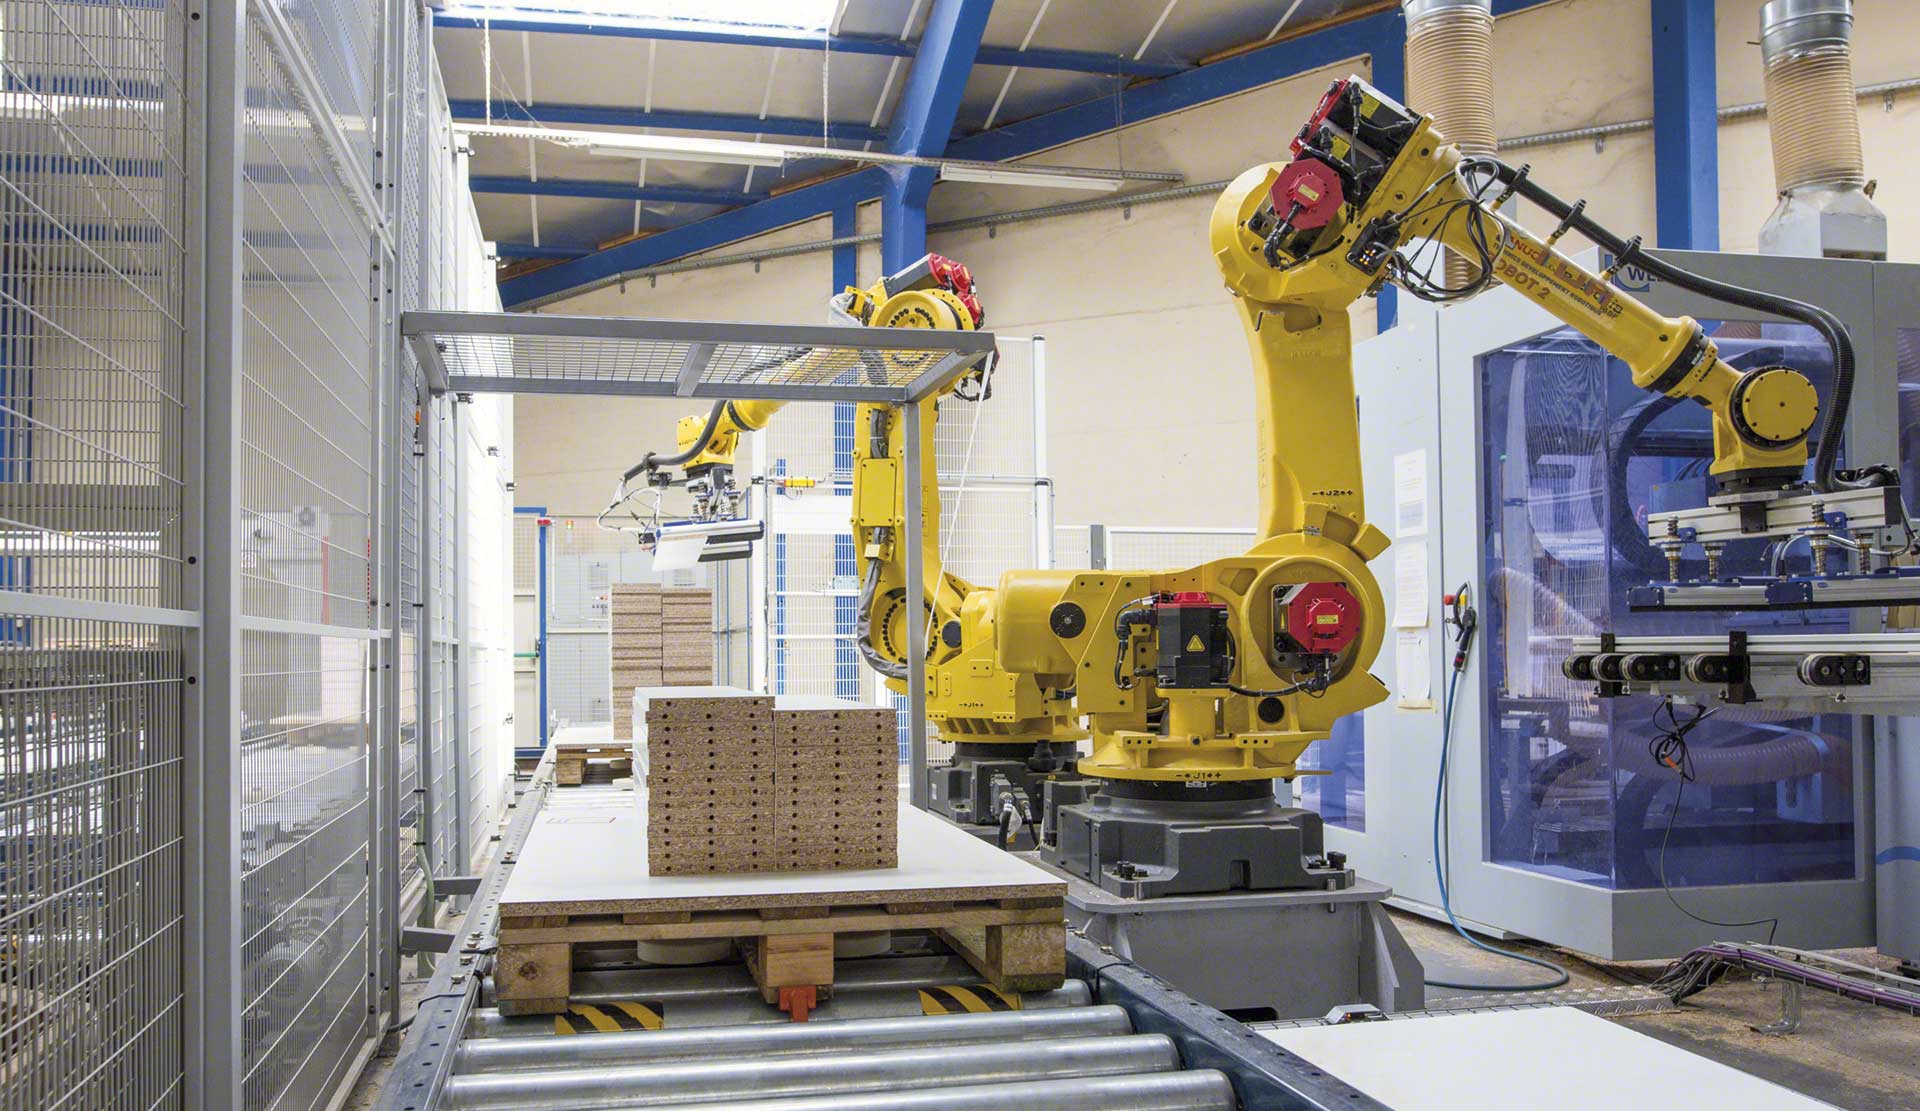 Le bras robotique industriel dynamise l'entrepôt